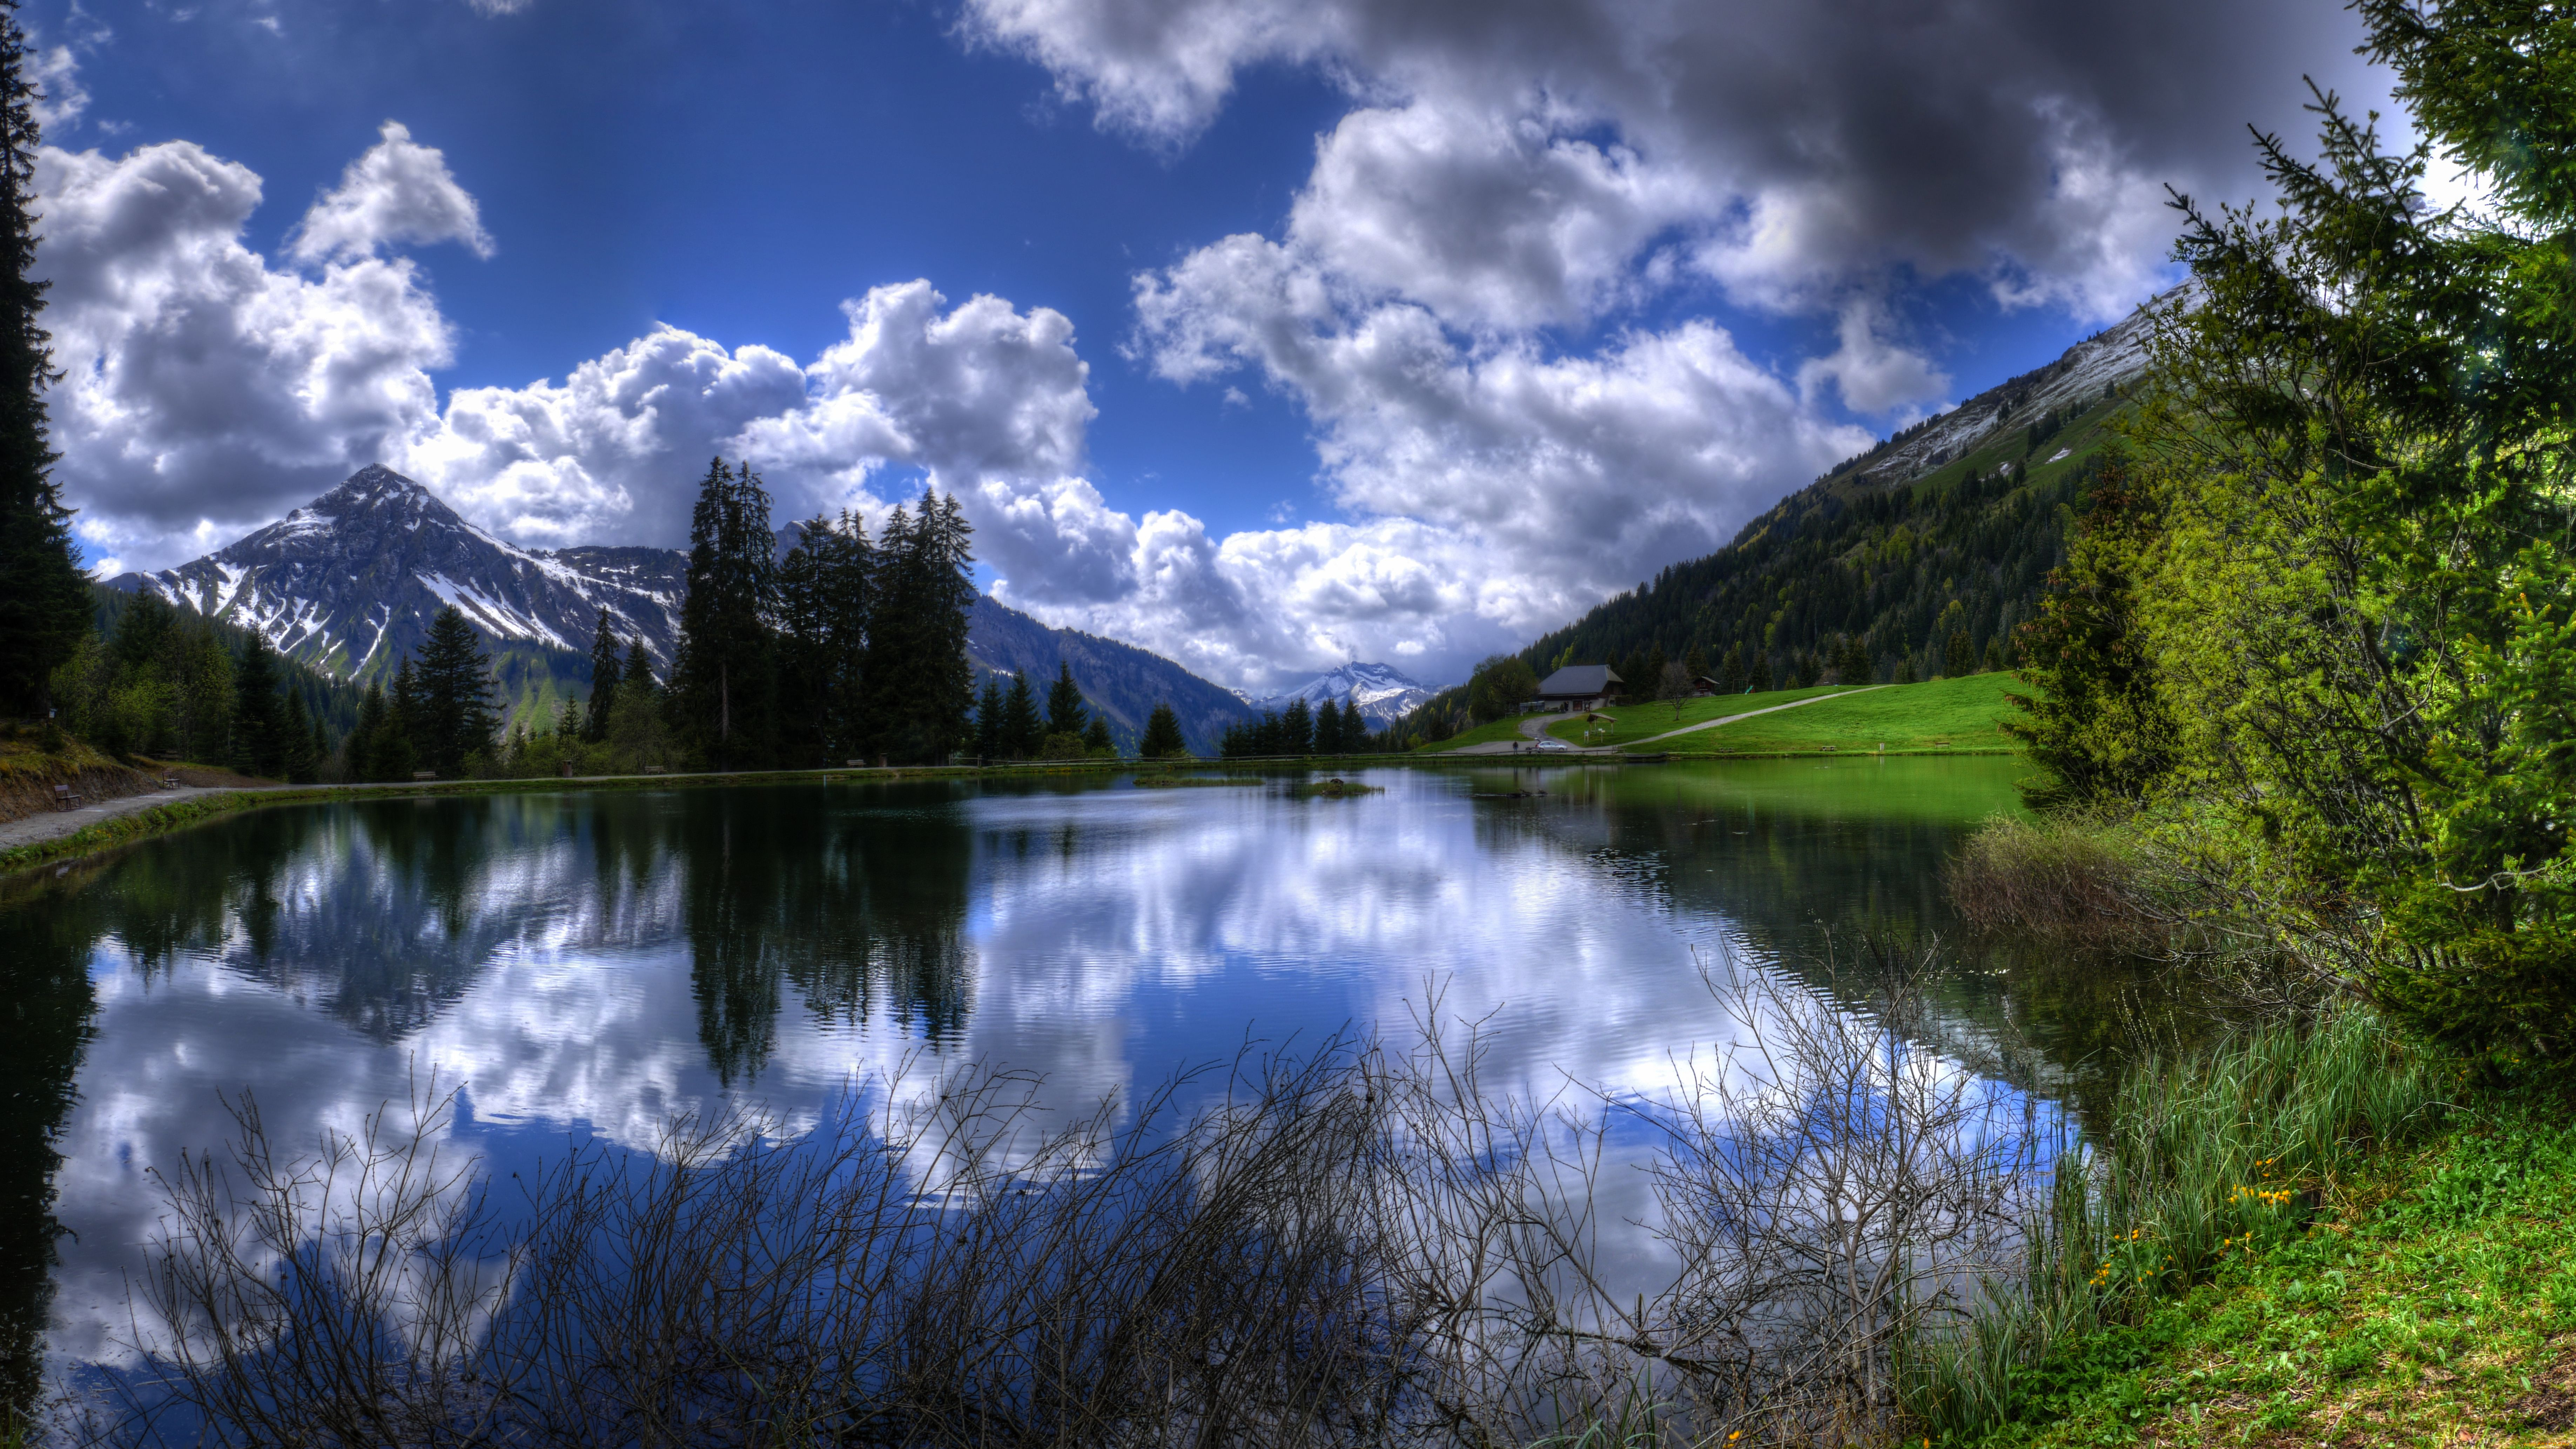 Красивые картинки природы хорошего качества. Природа. Озеро в горах. Красивый пейзаж. Красивые пейзажи природы.